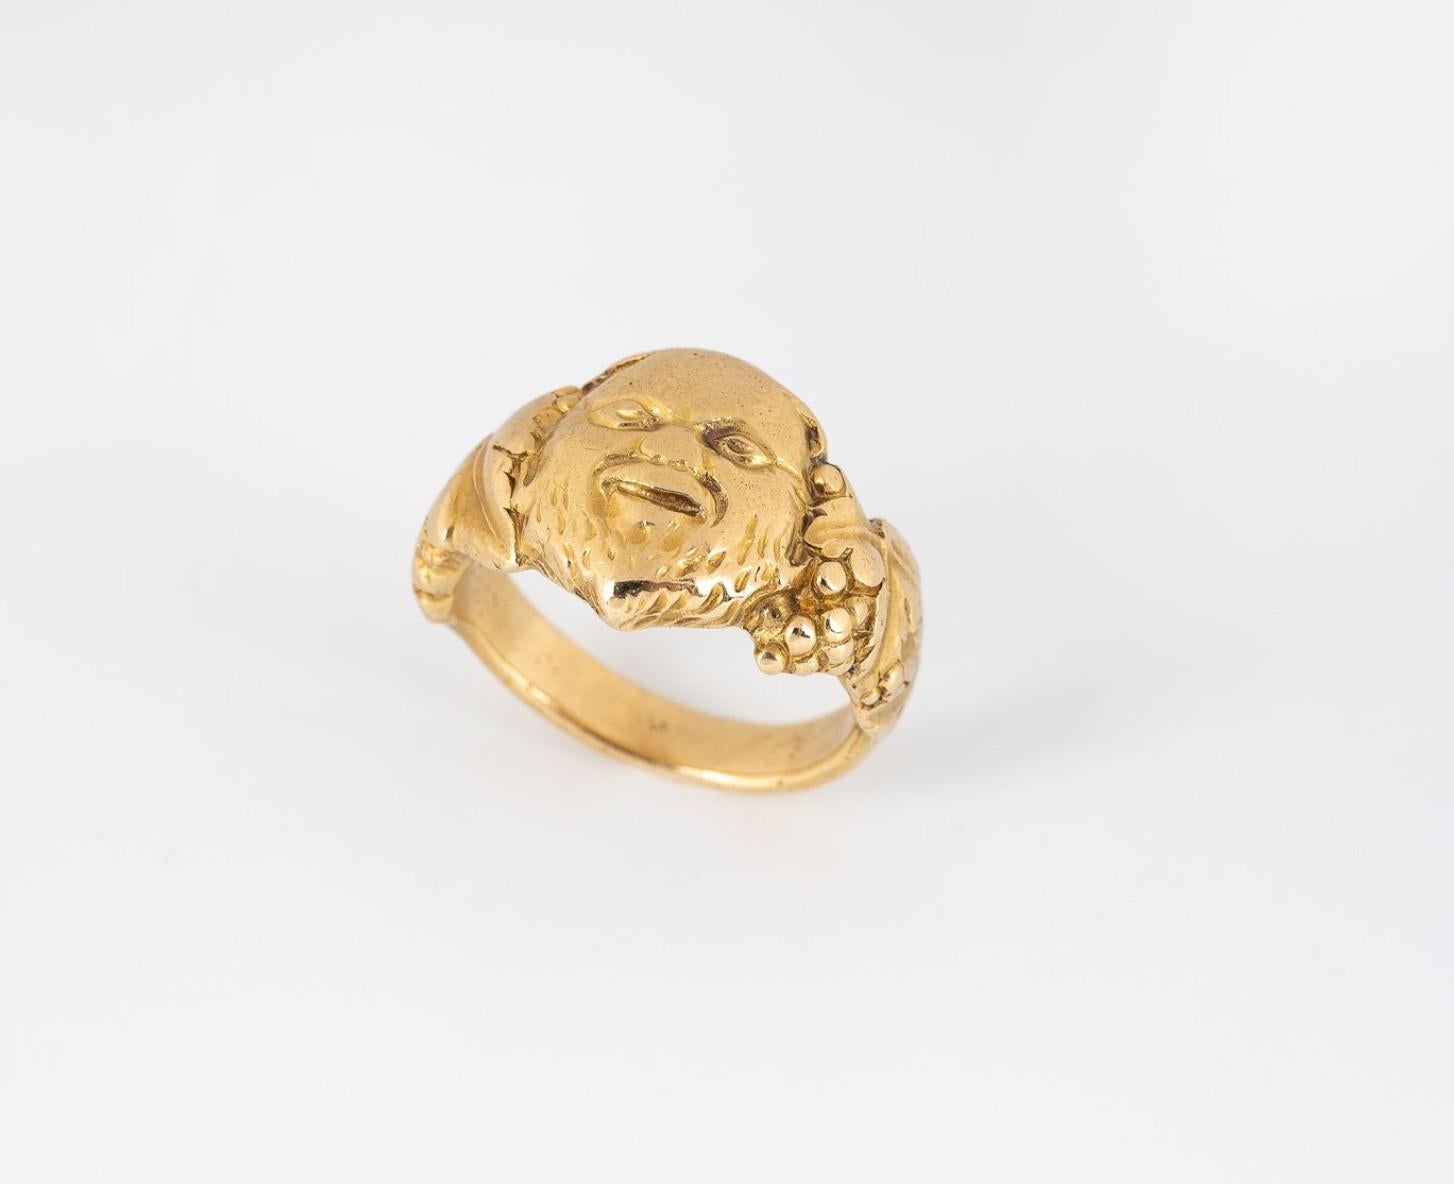 Edouard Aimé Arnould (tätig 1899/1945)
Ziselierter Jugendstilring aus 18-karätigem Gold mit einem von Ranken getragenen Bacchus. Größe 7 1/4
Gewicht: 12,17 g.
Edouard Aimé Arnould (aktiv 1899/1945) war ein preisgekrönter französischer Juwelier, der